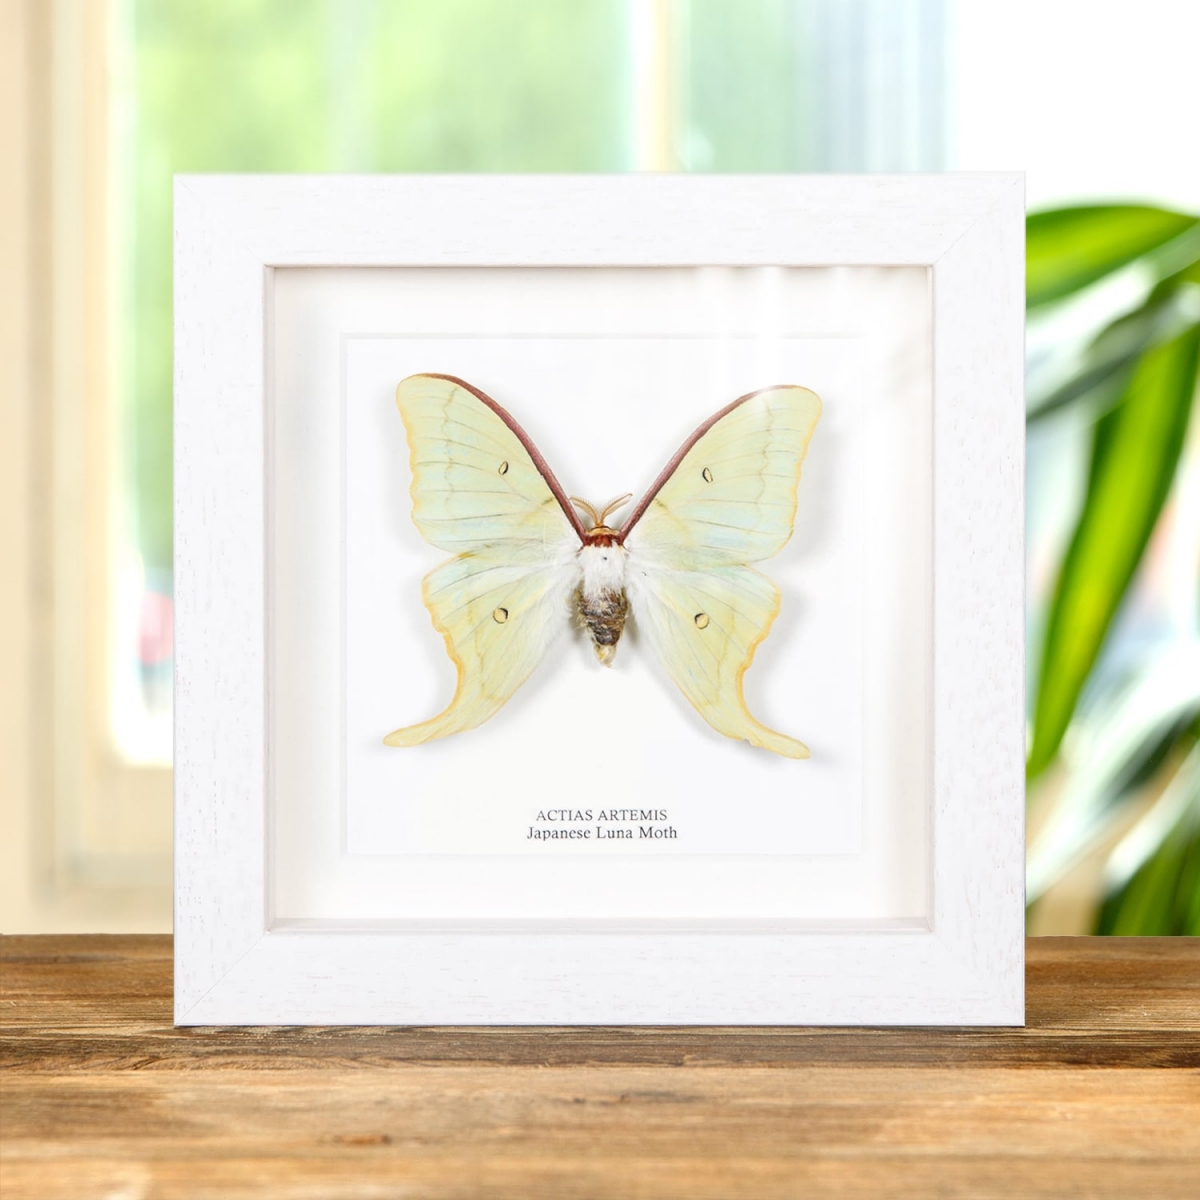 Japanese Luna Moth In Box Frame (Actias artemis)